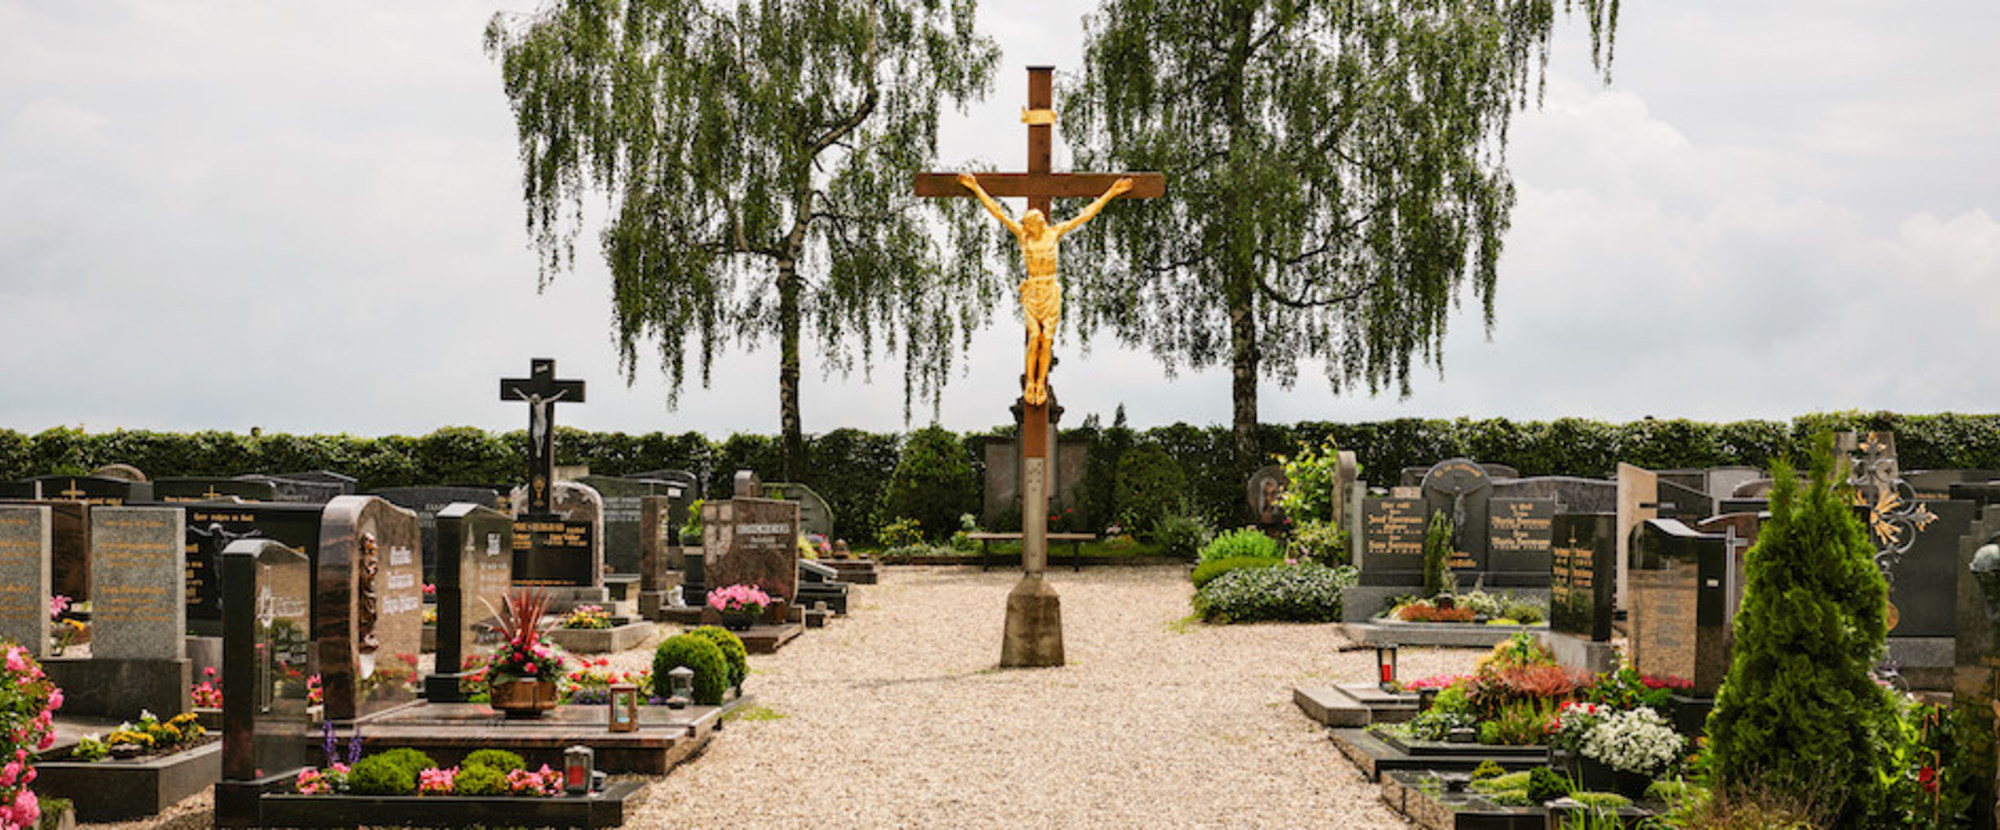 Kruzifix und Gräber auf dem Friedhof Ziegetsdorf in Regensburg am 20. Juni 2020, auf dem sich das Familiengrab Ratzinger befindet. Beigesetzt sind Joseph und Maria Ratzinger, die Eltern von Georg Ratzinger und dem emeritierten Papst Benedikt XVI., so